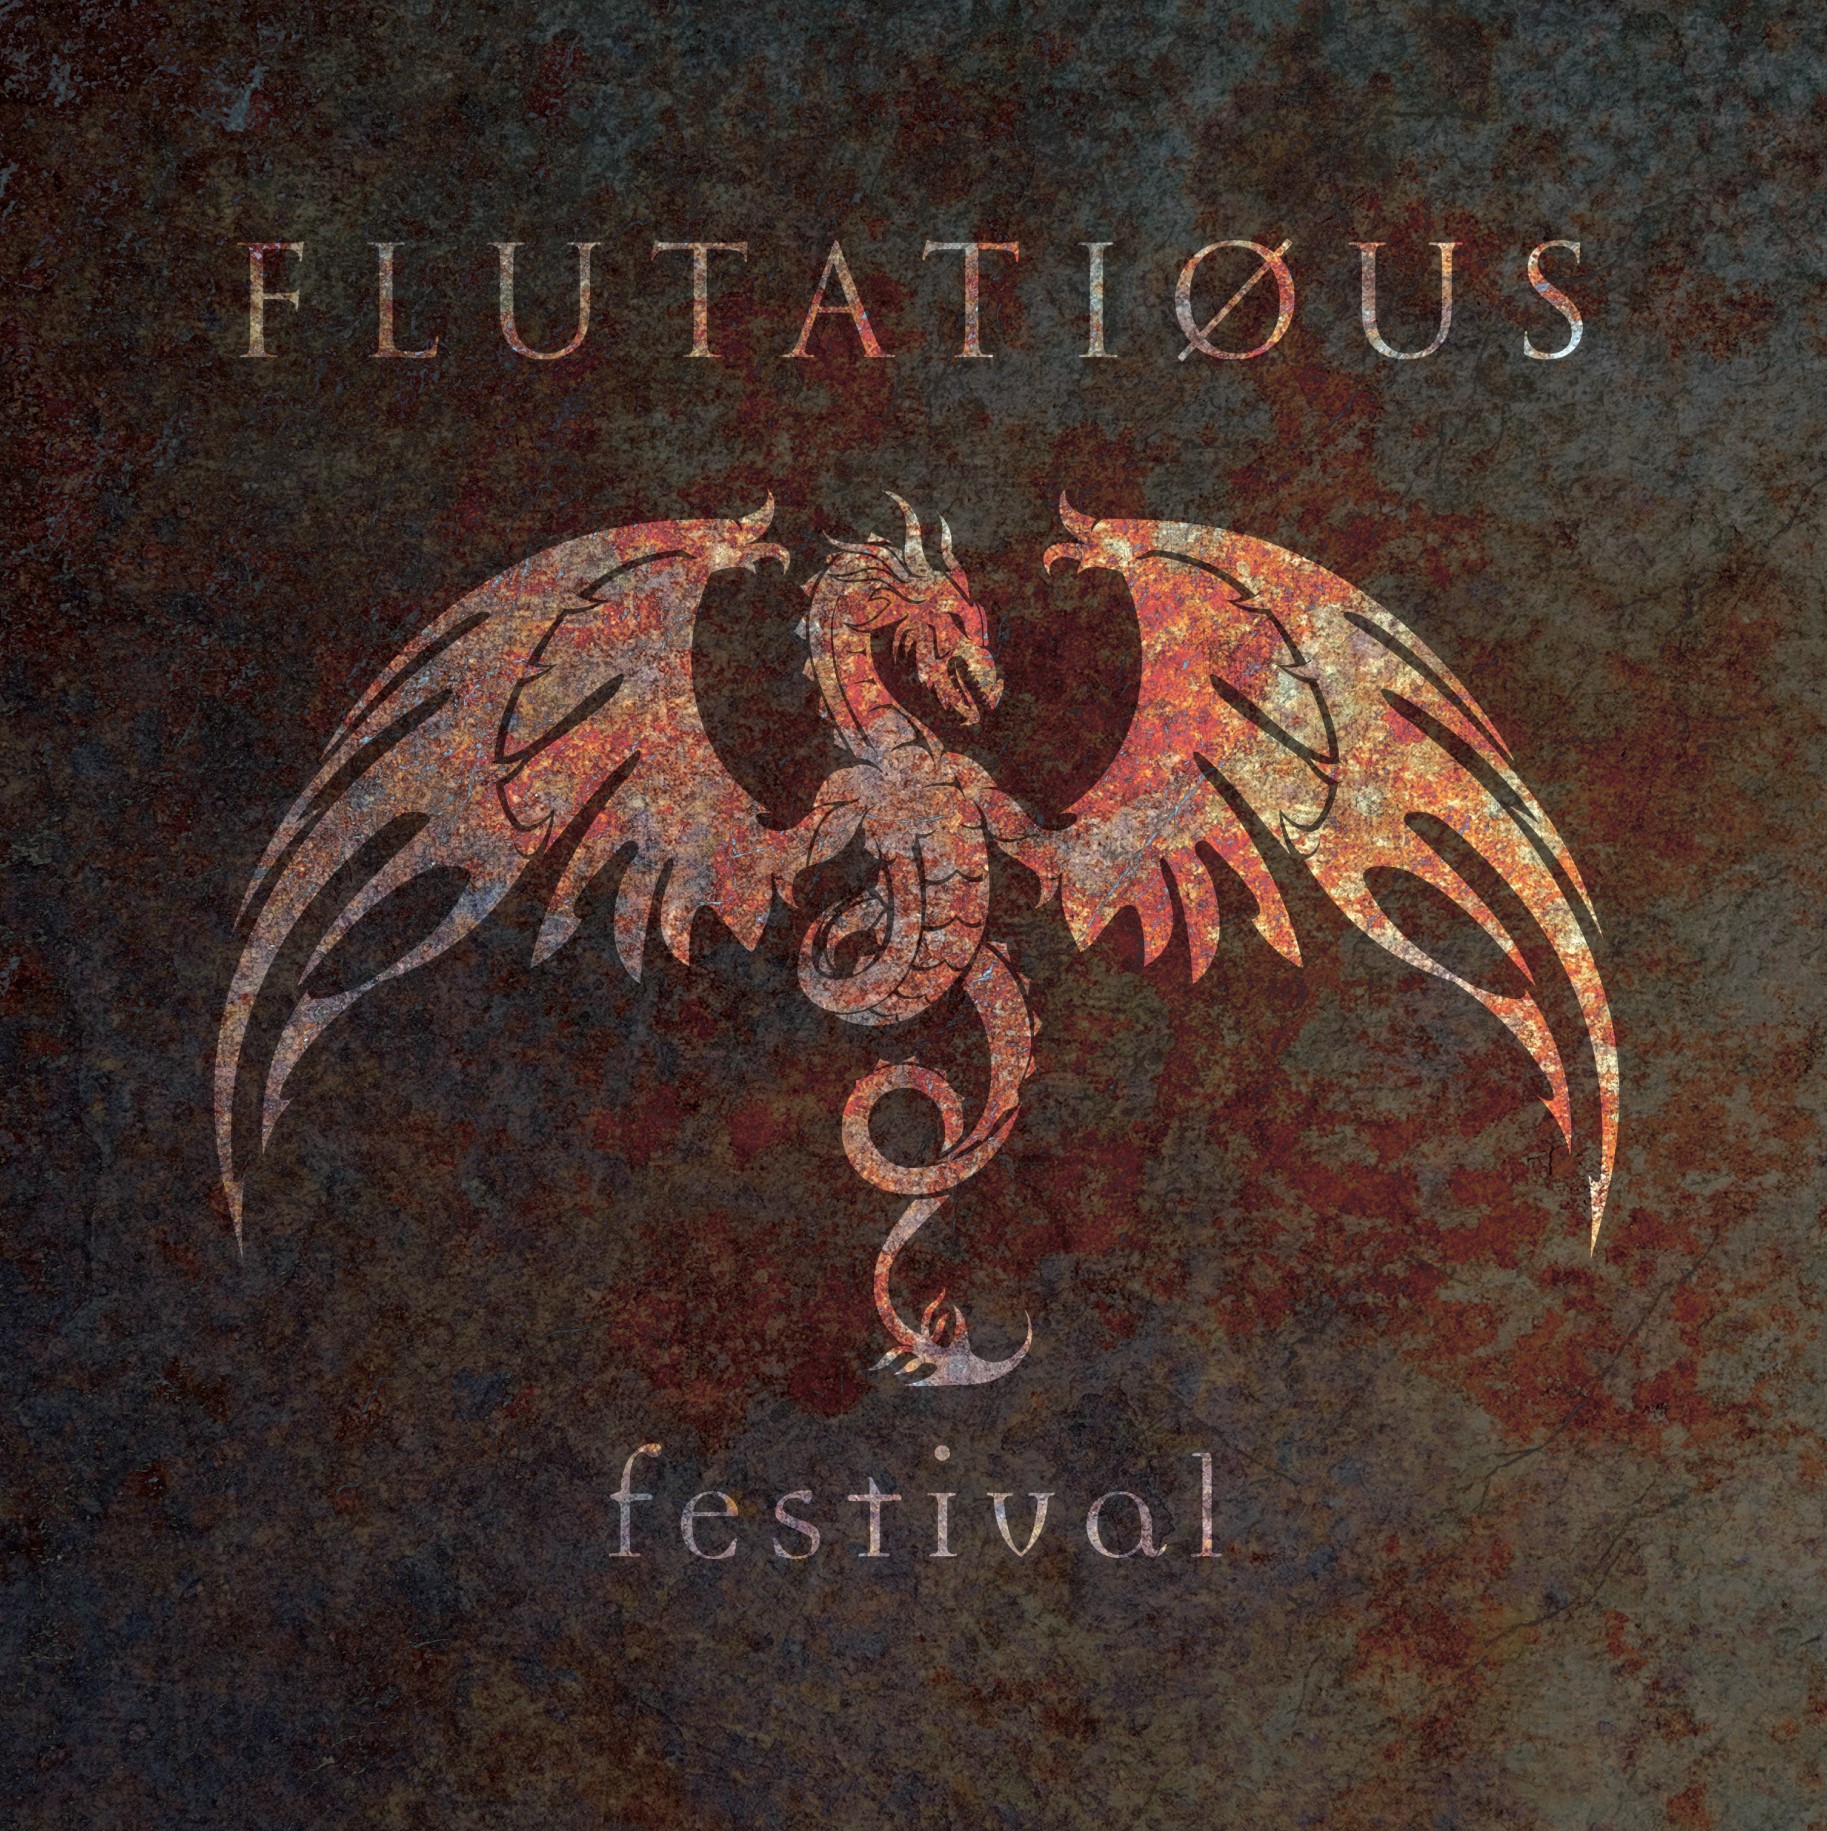 Flutatious - Festival